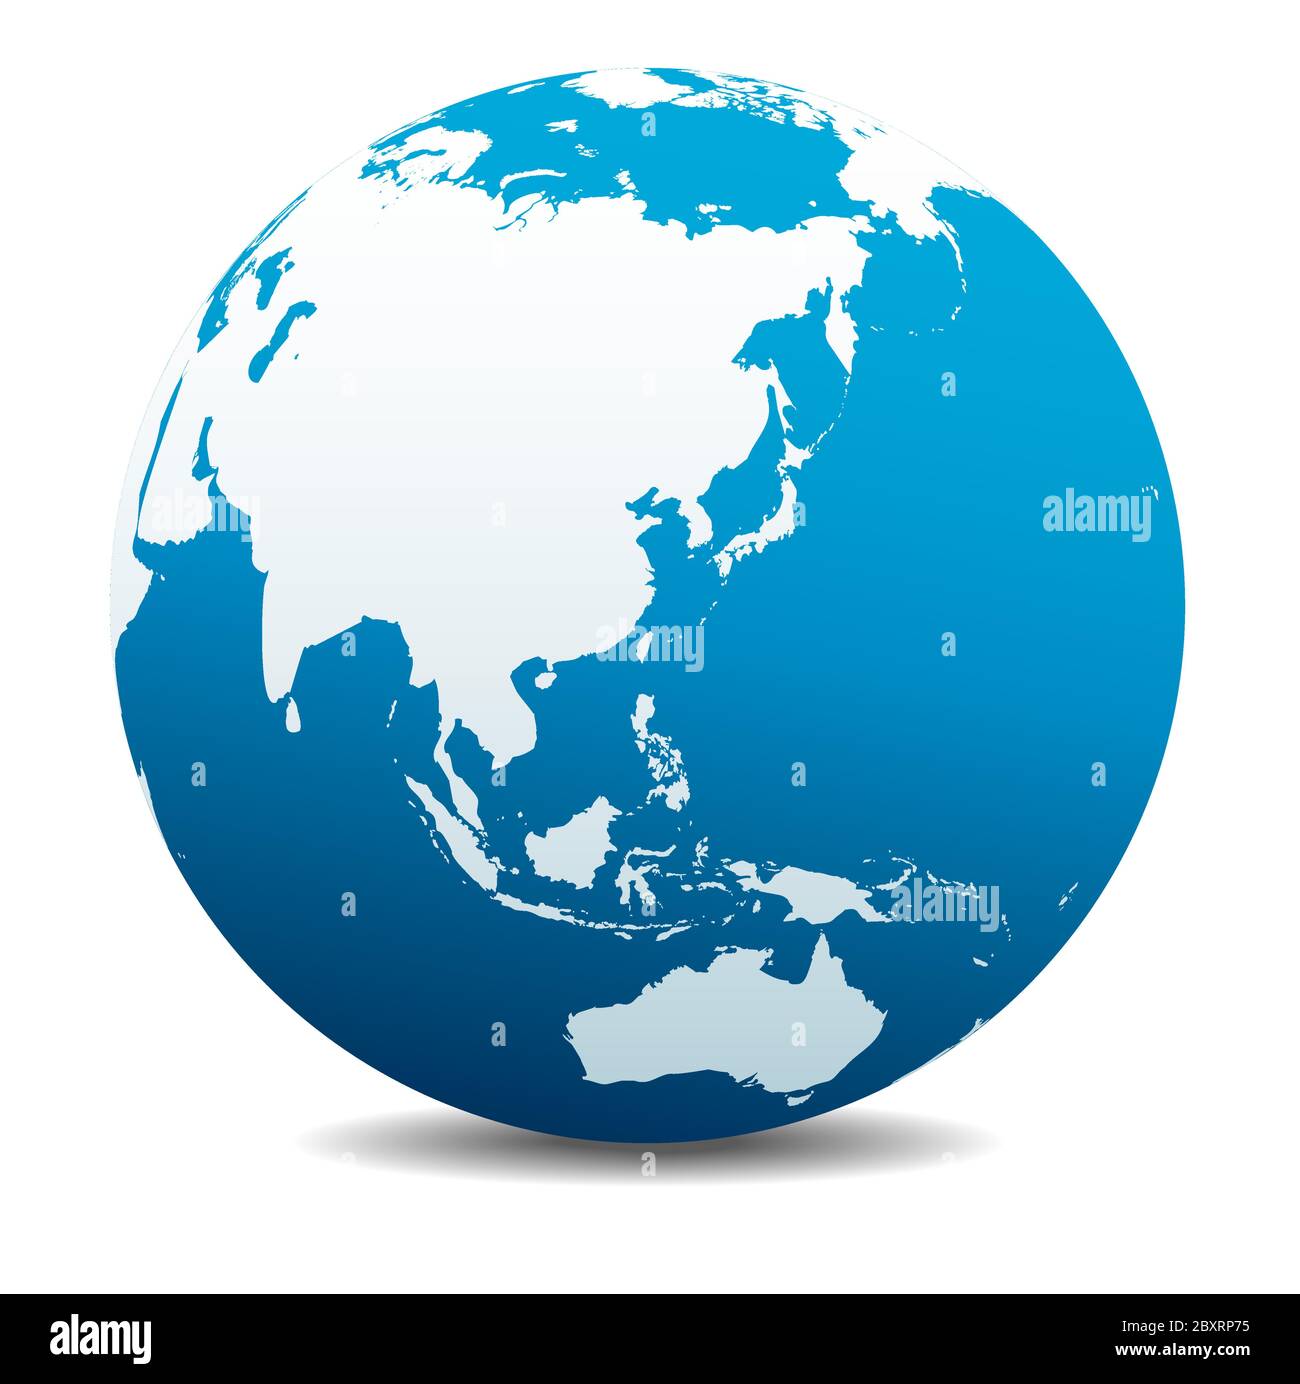 Cina, Giappone, Malesia, Thailandia, Indonesia. Icona Mappa vettoriale del globo mondiale, Terra. Tutti gli elementi si trovano su singoli livelli nel file vettoriale. Illustrazione Vettoriale